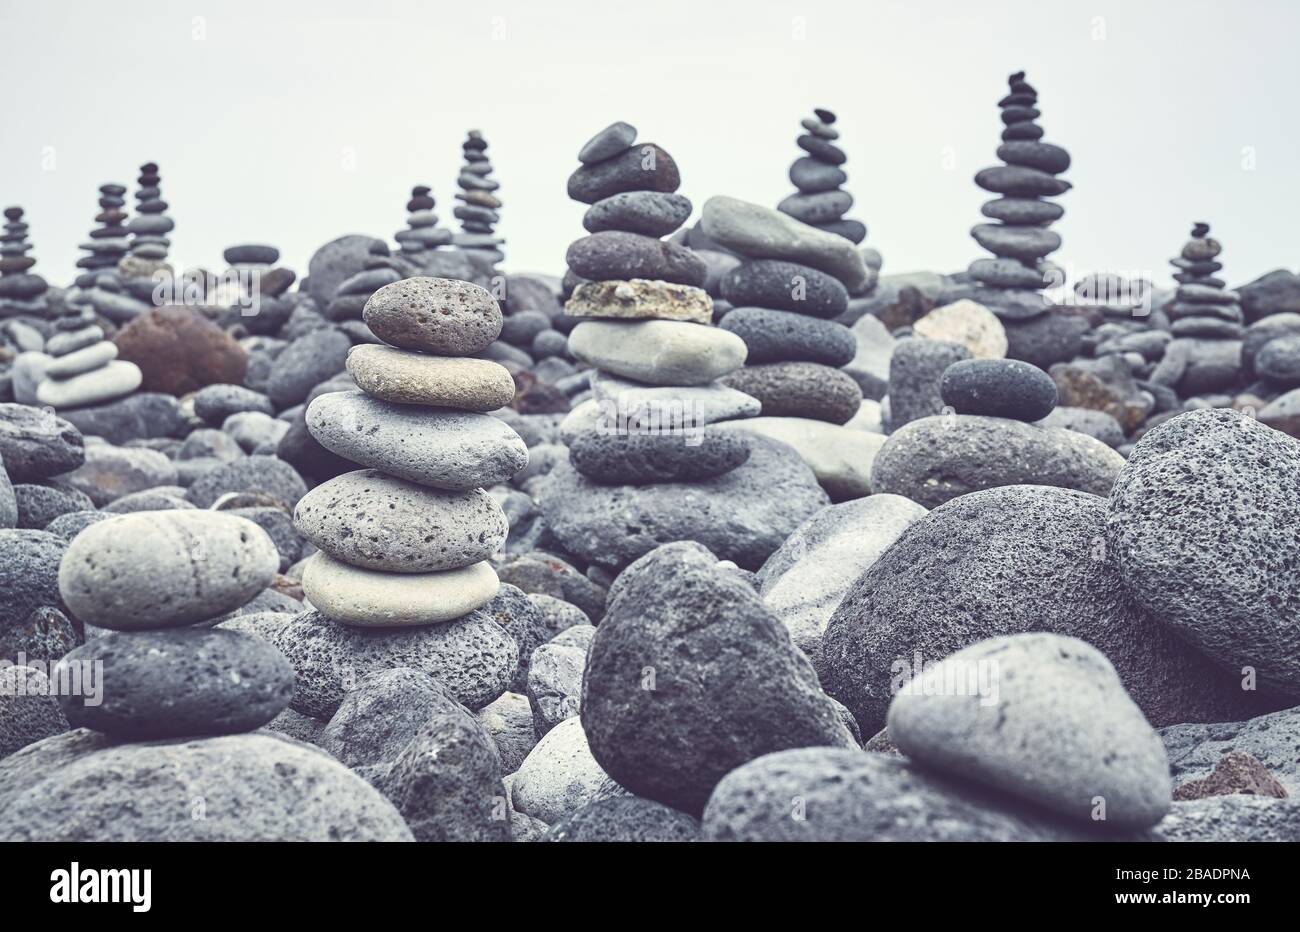 Les cheminées en pierre sur une plage, harmonisation des couleurs appliquées, selective focus. Banque D'Images